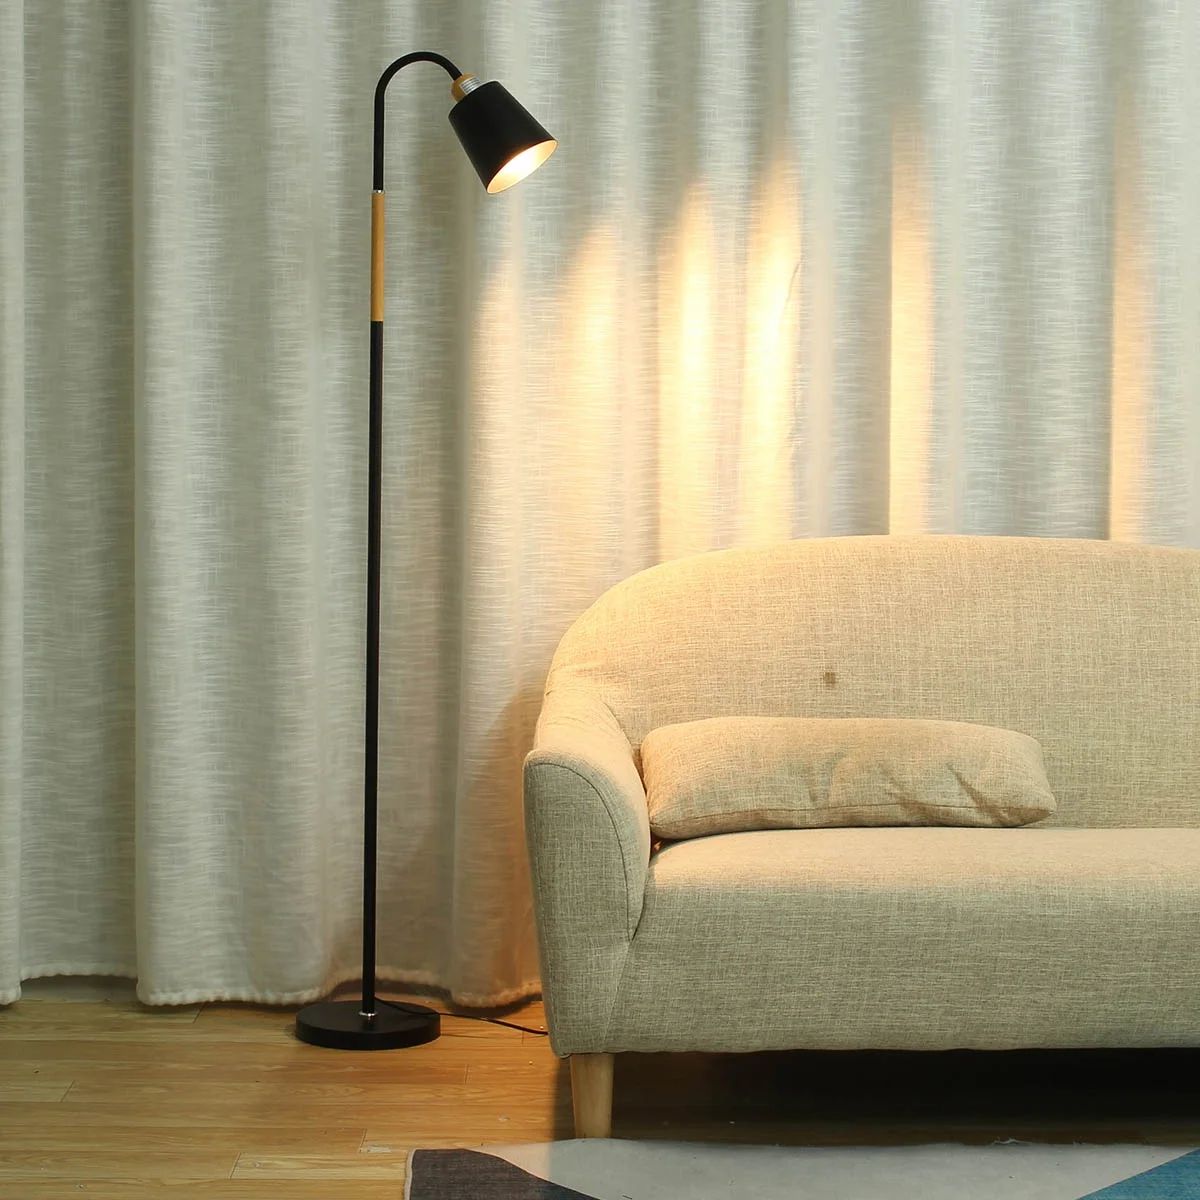 Stoneway Floor Lamp, Gooseneck Adjustable Touch Control Standing Lamp for Living Room Bedroom Off... | Walmart (US)